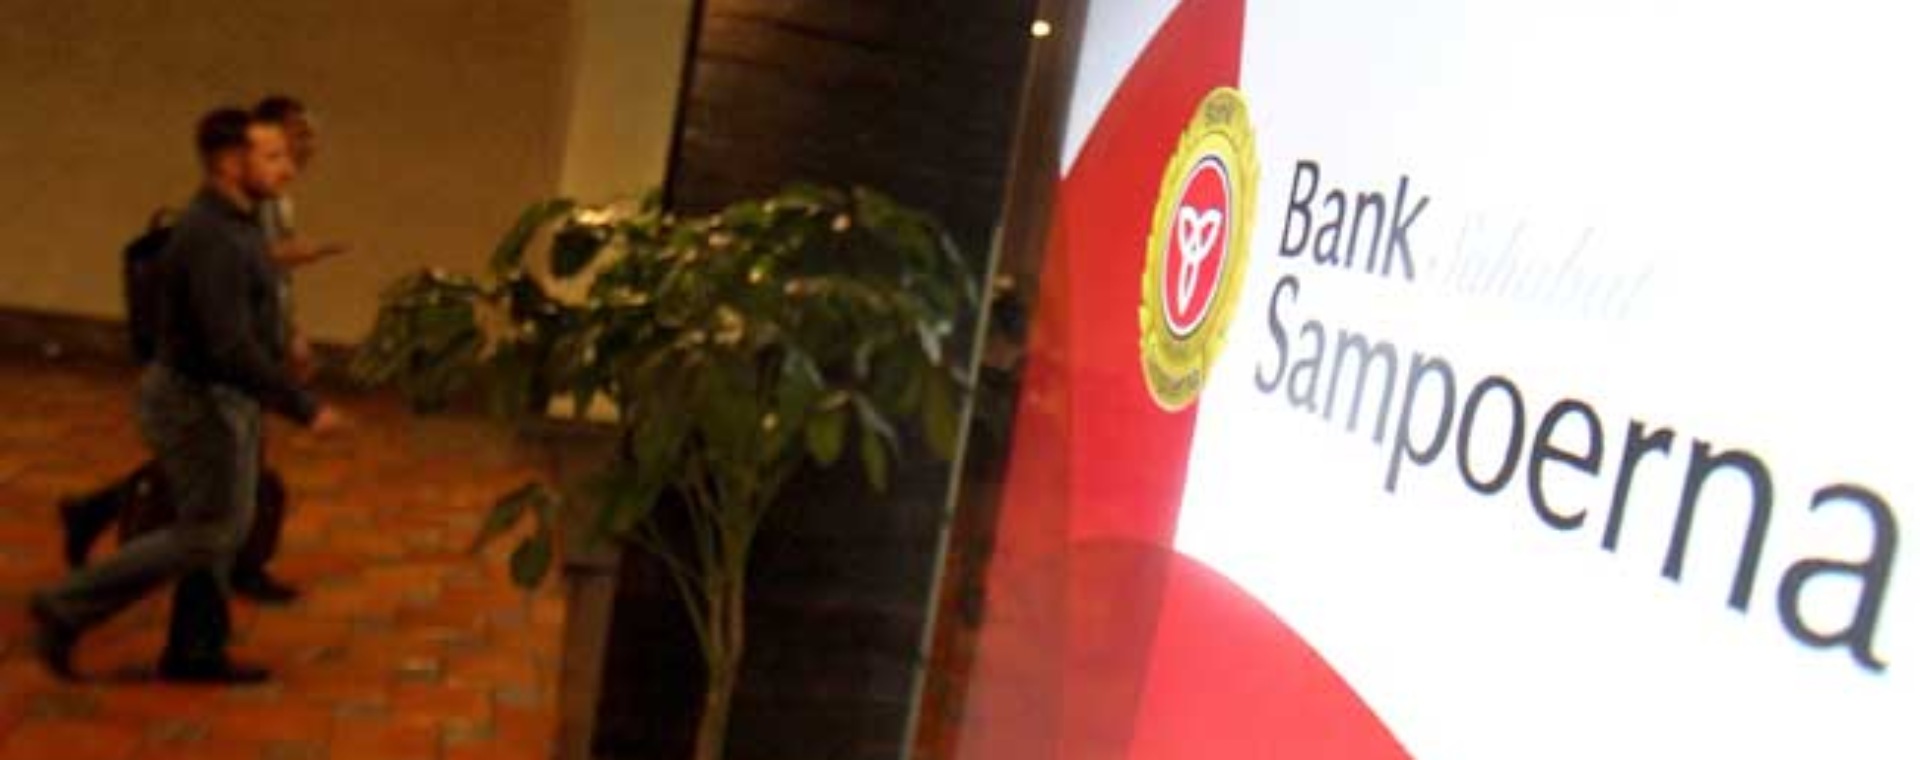 Pengunjung melintas didekat logo Bank Sampoerna di Jakarta. Bisnis - Arief Hermawan P